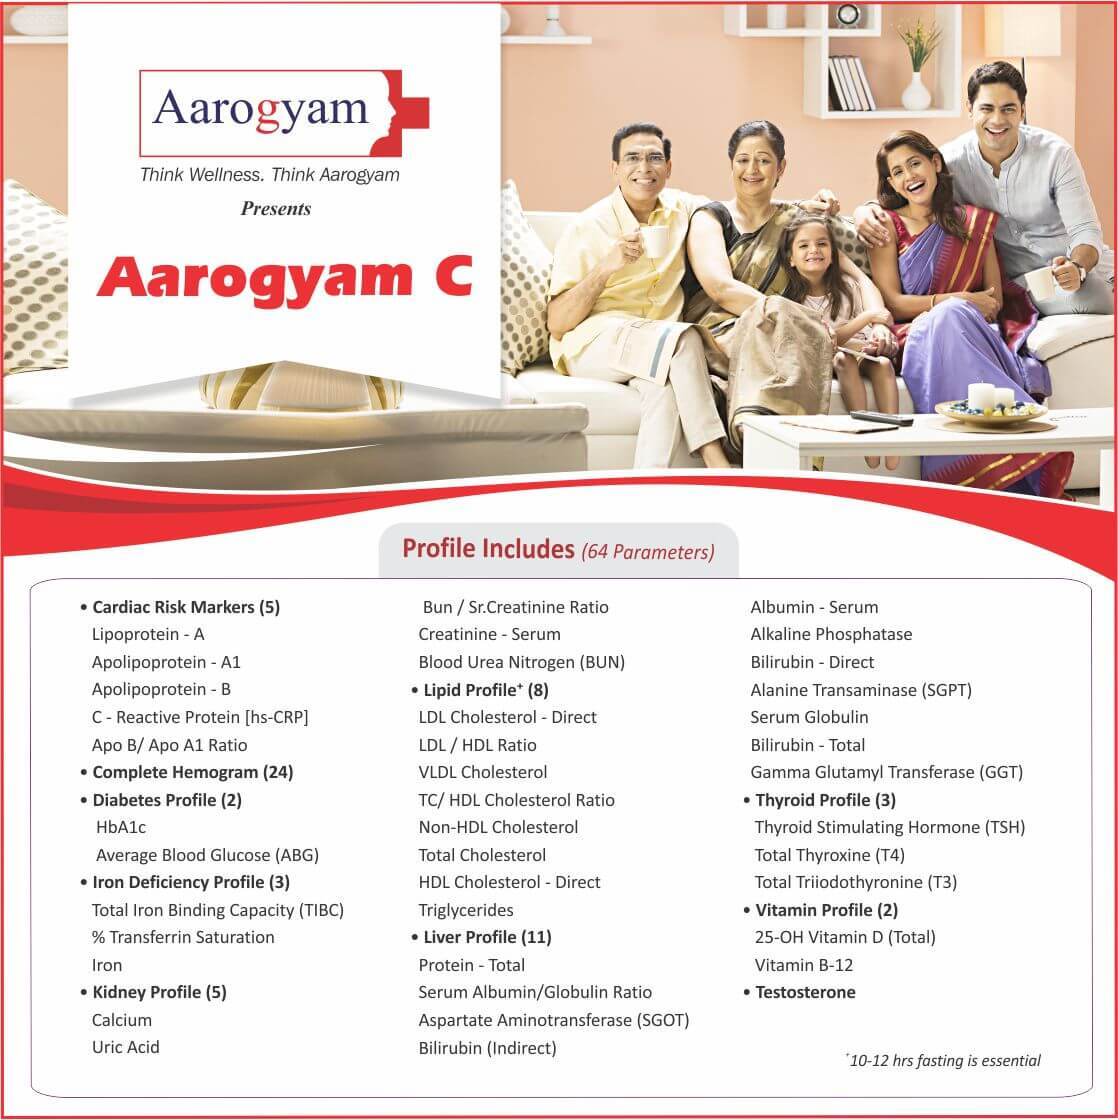 Aarogyam C Profile